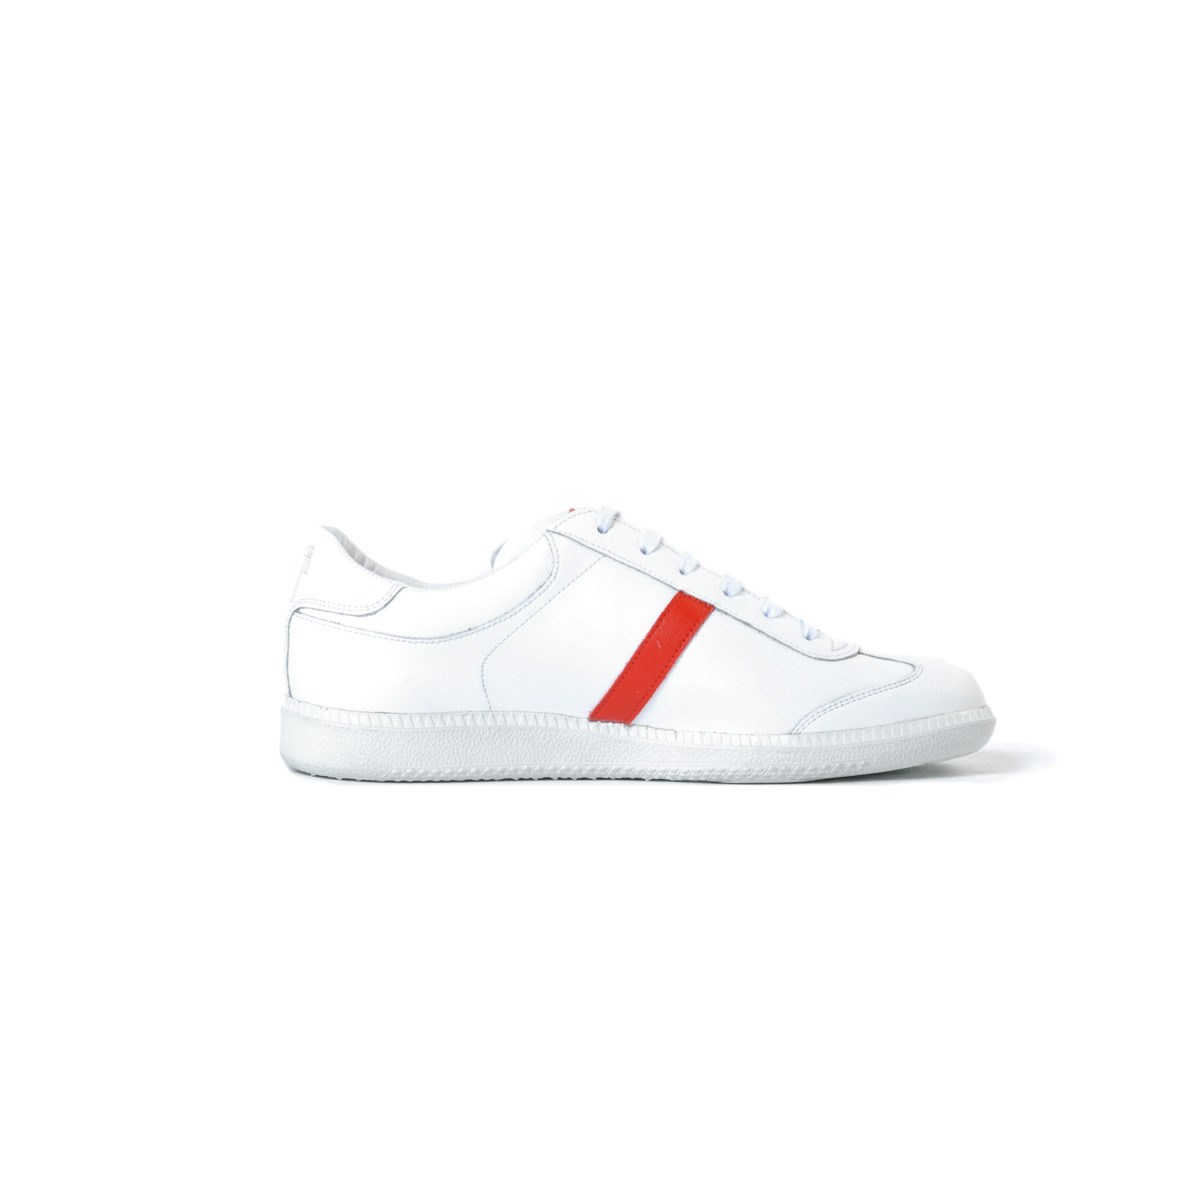 Tisza shoes-Compakt-White-classic